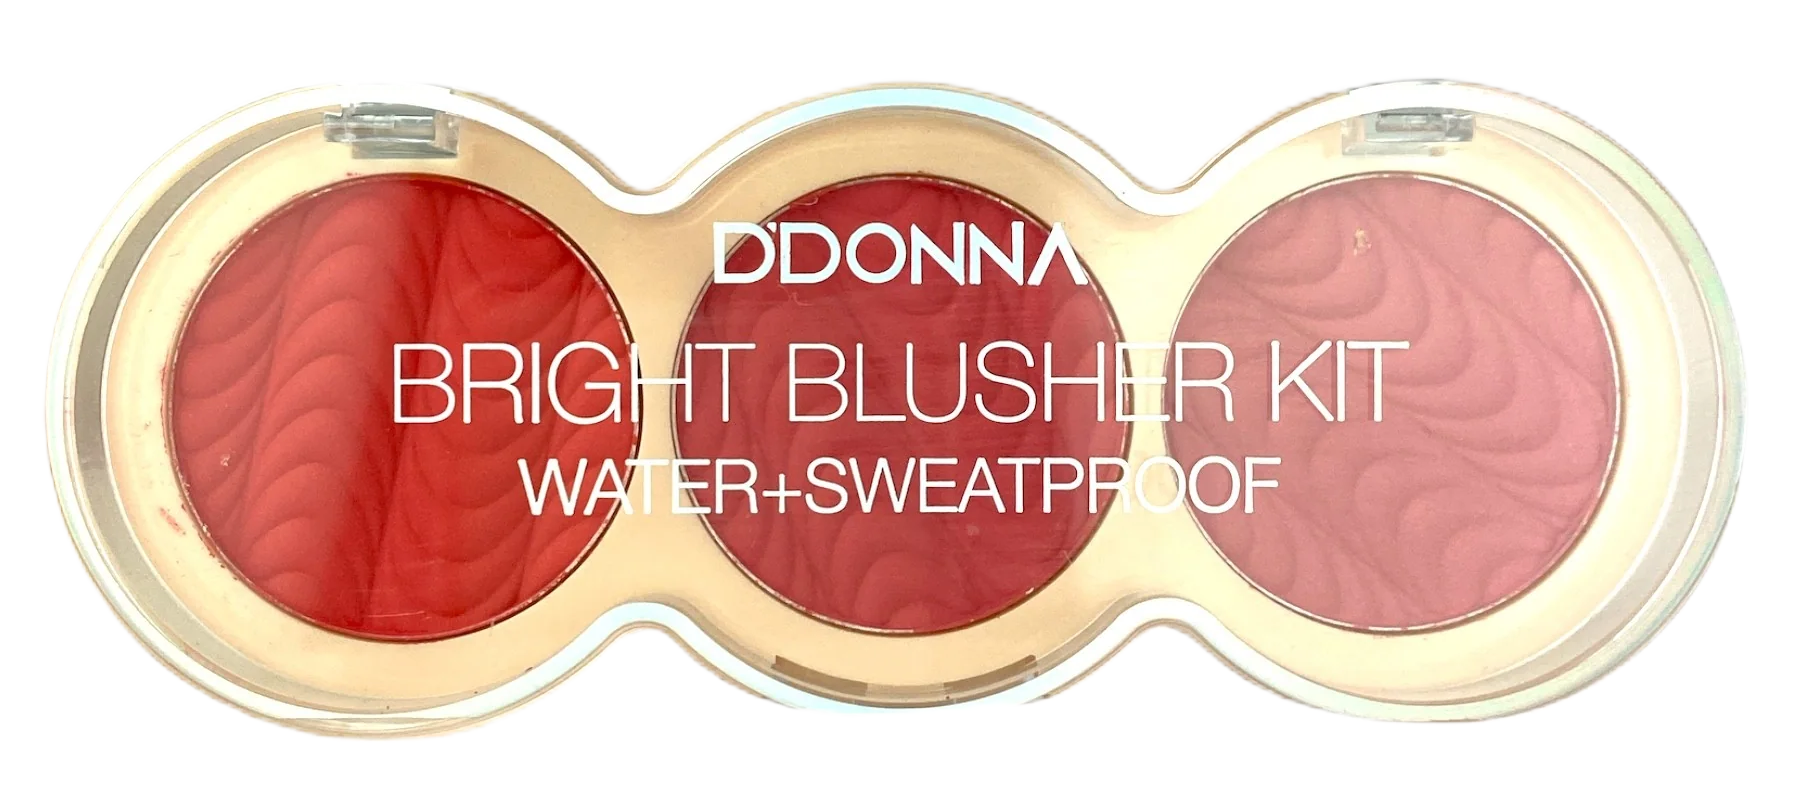 Bright Blusher Kit Water Sweatproof 7,5gr no 03 DDONNA Cosmetics 13319A-3 – DDONNA Cosmetics – nj_13319A-3